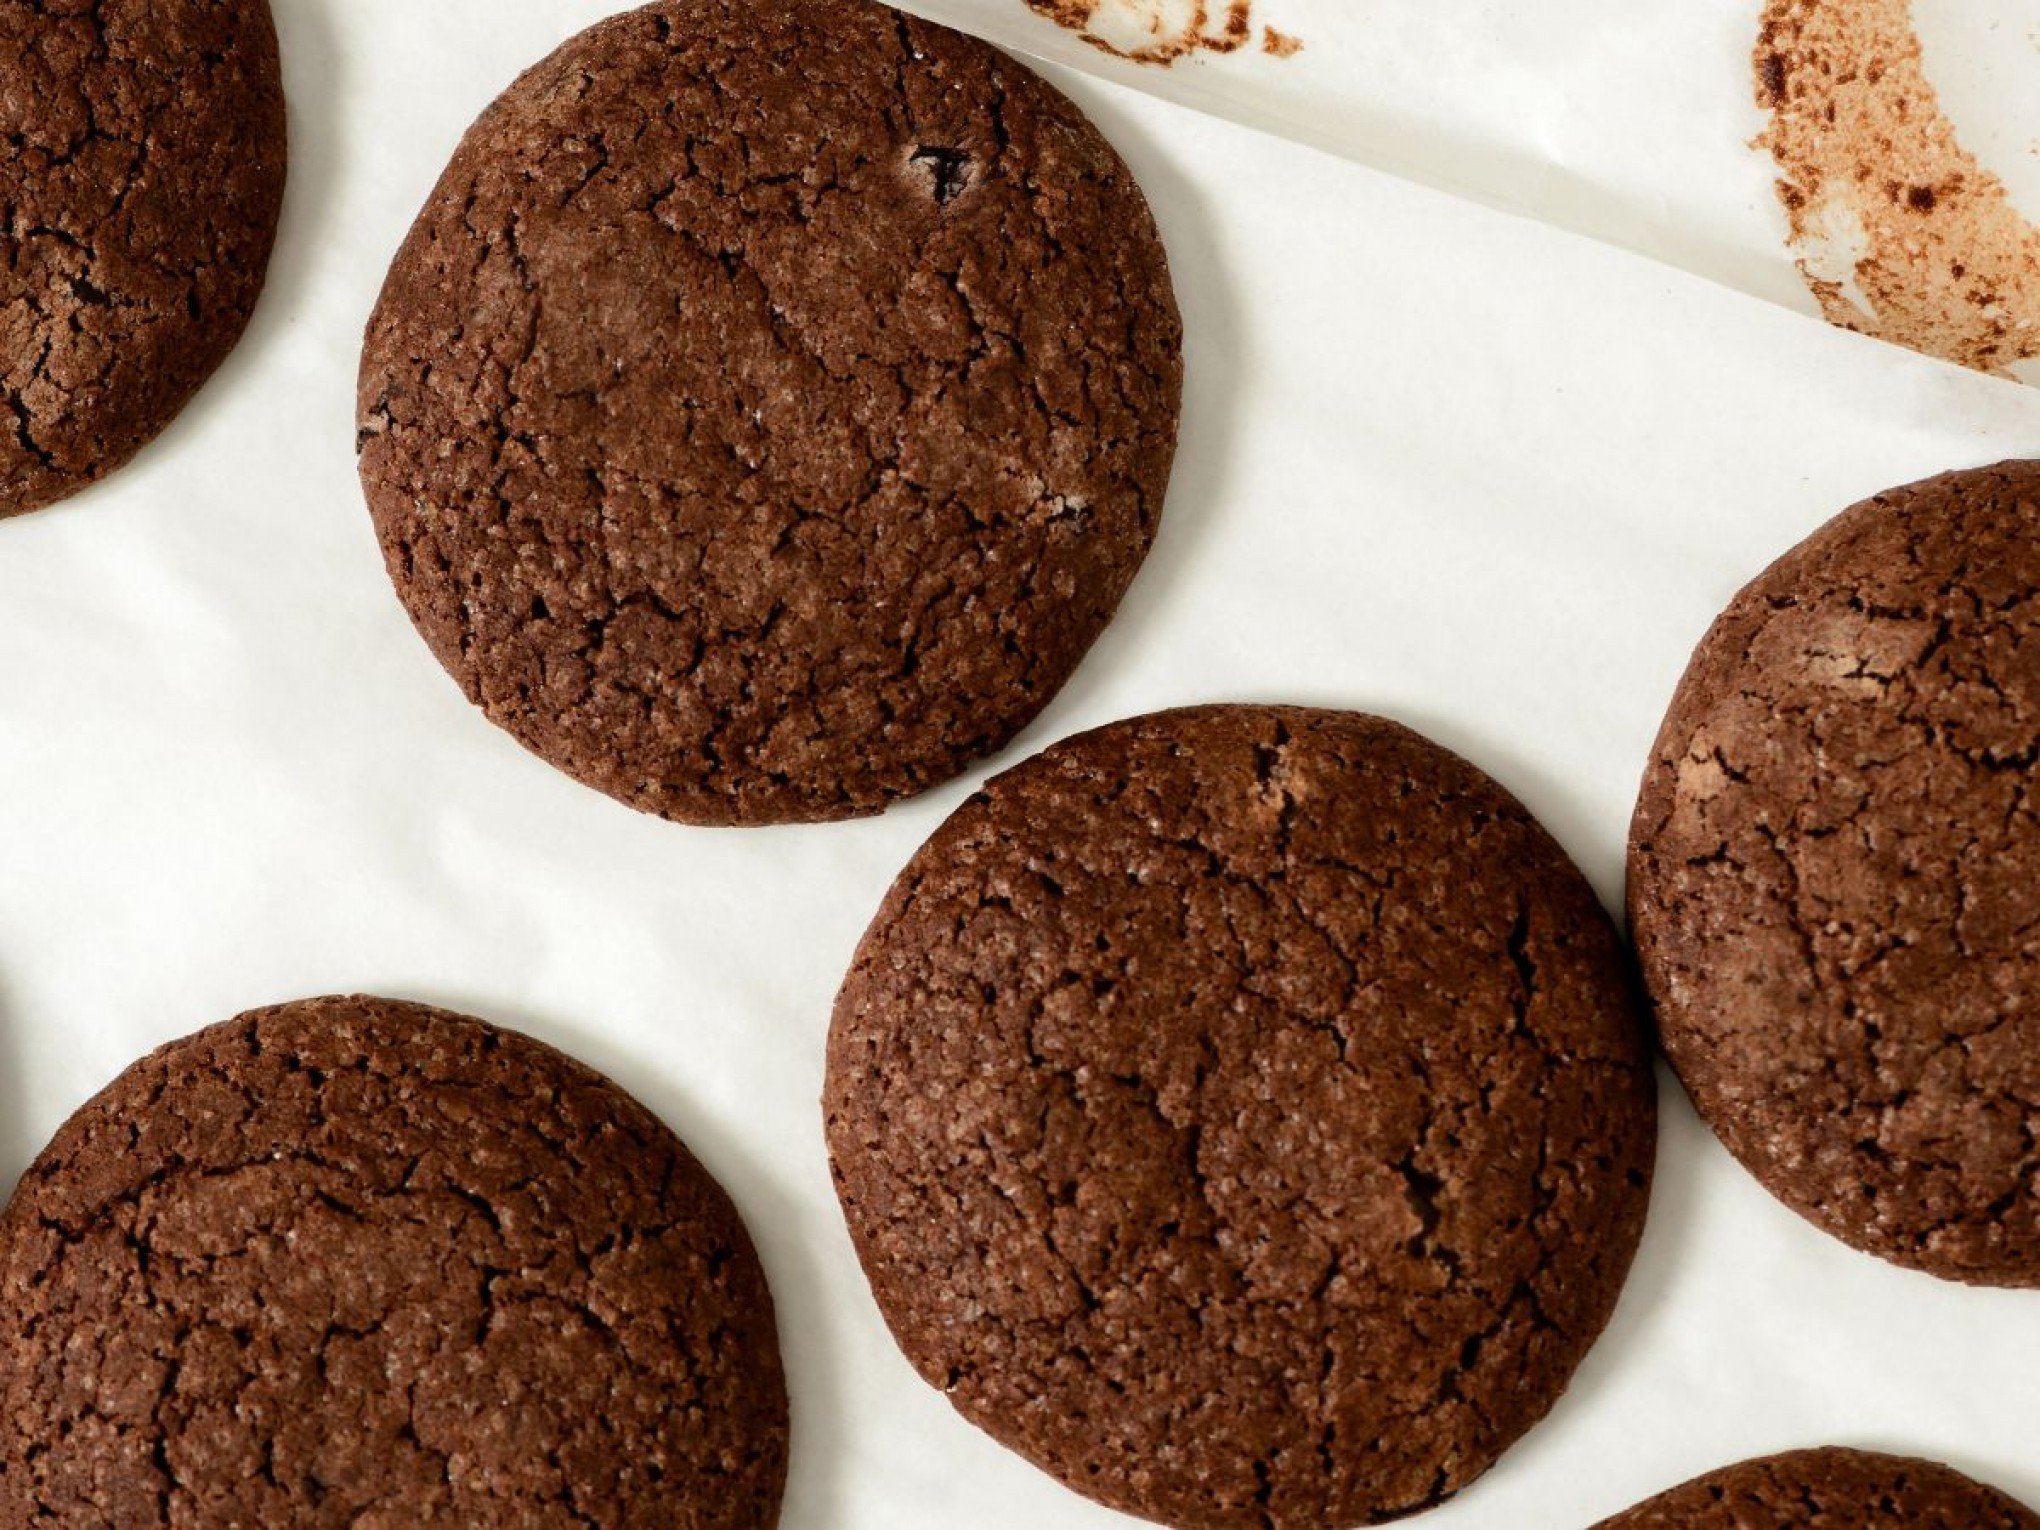 PÁSCOA: Confira receitas diferentes de cookies e pão de mel com chocolate para adoçar a semana